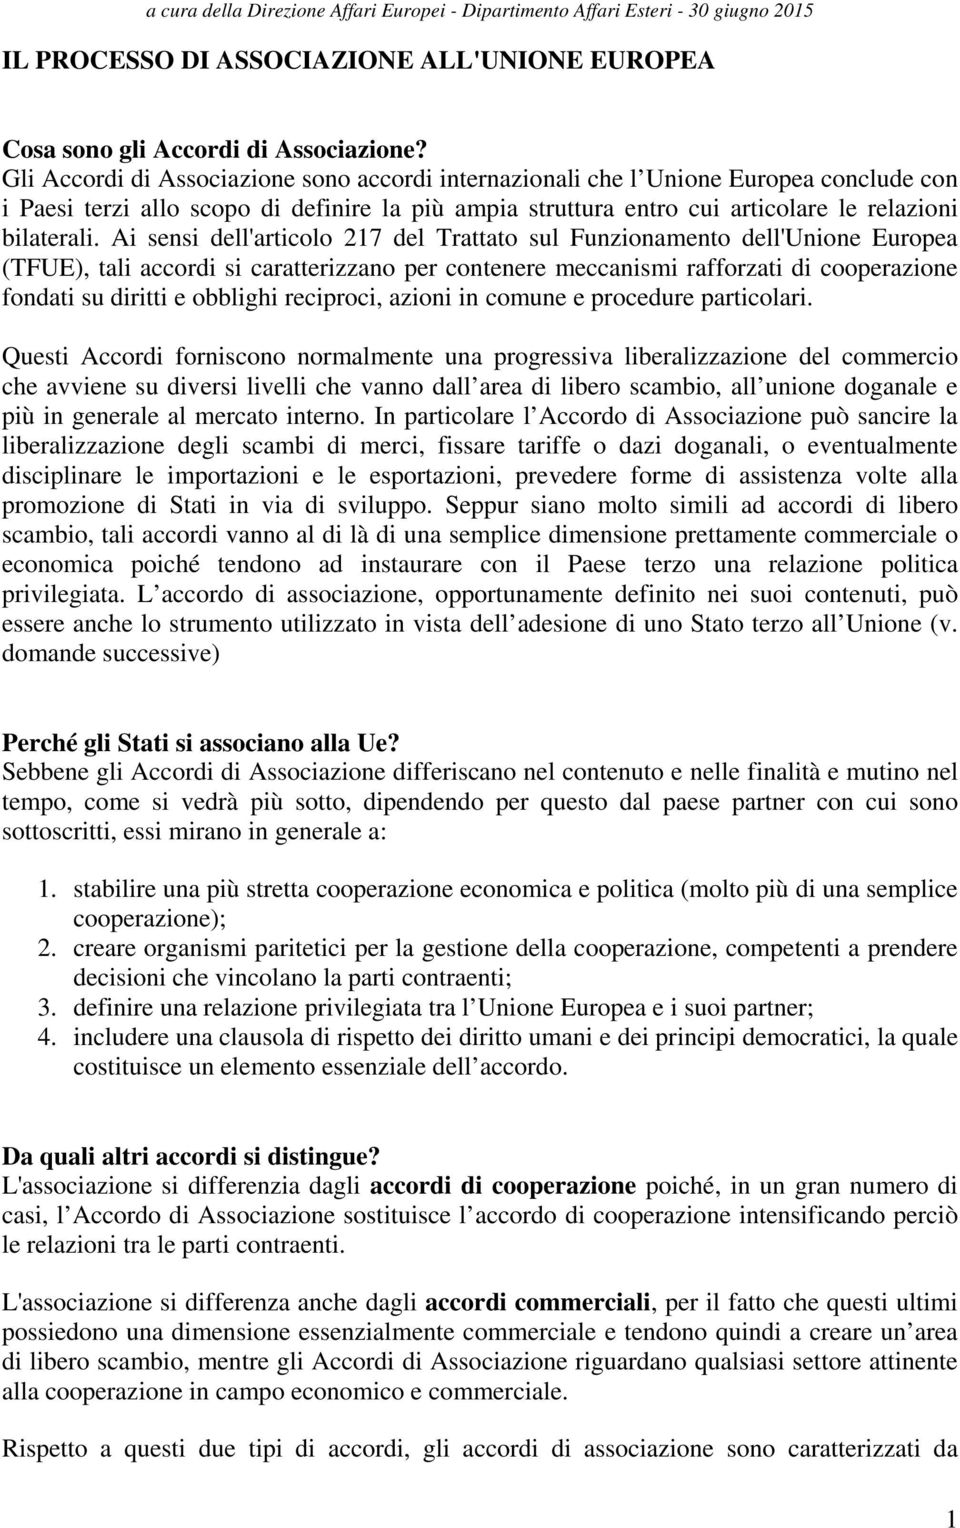 Ai sensi dell'articolo 217 del Trattato sul Funzionamento dell'unione Europea (TFUE), tali accordi si caratterizzano per contenere meccanismi rafforzati di cooperazione fondati su diritti e obblighi